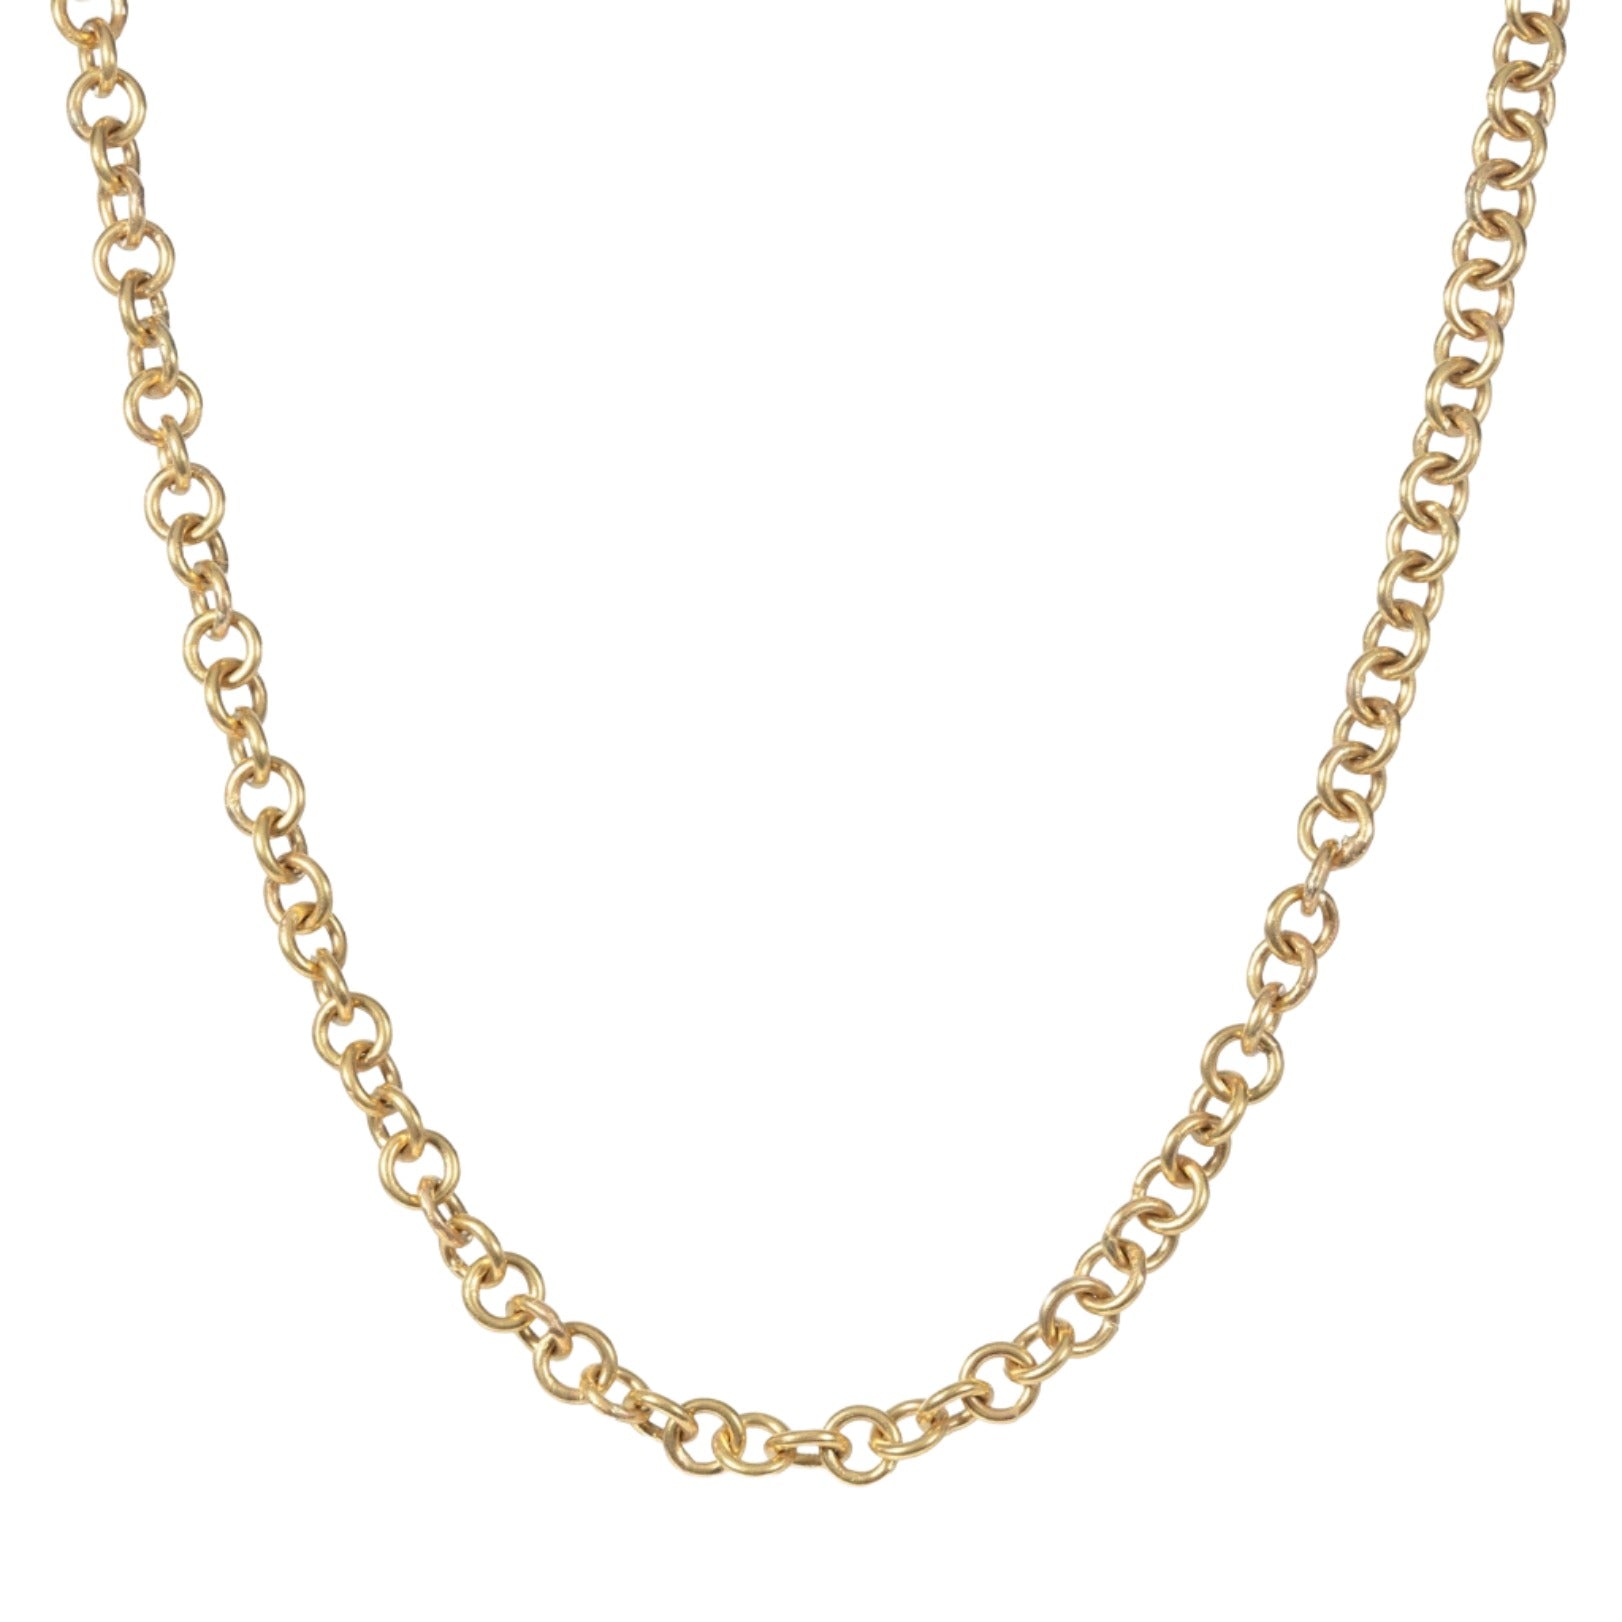 Golden Thread Chain Necklace